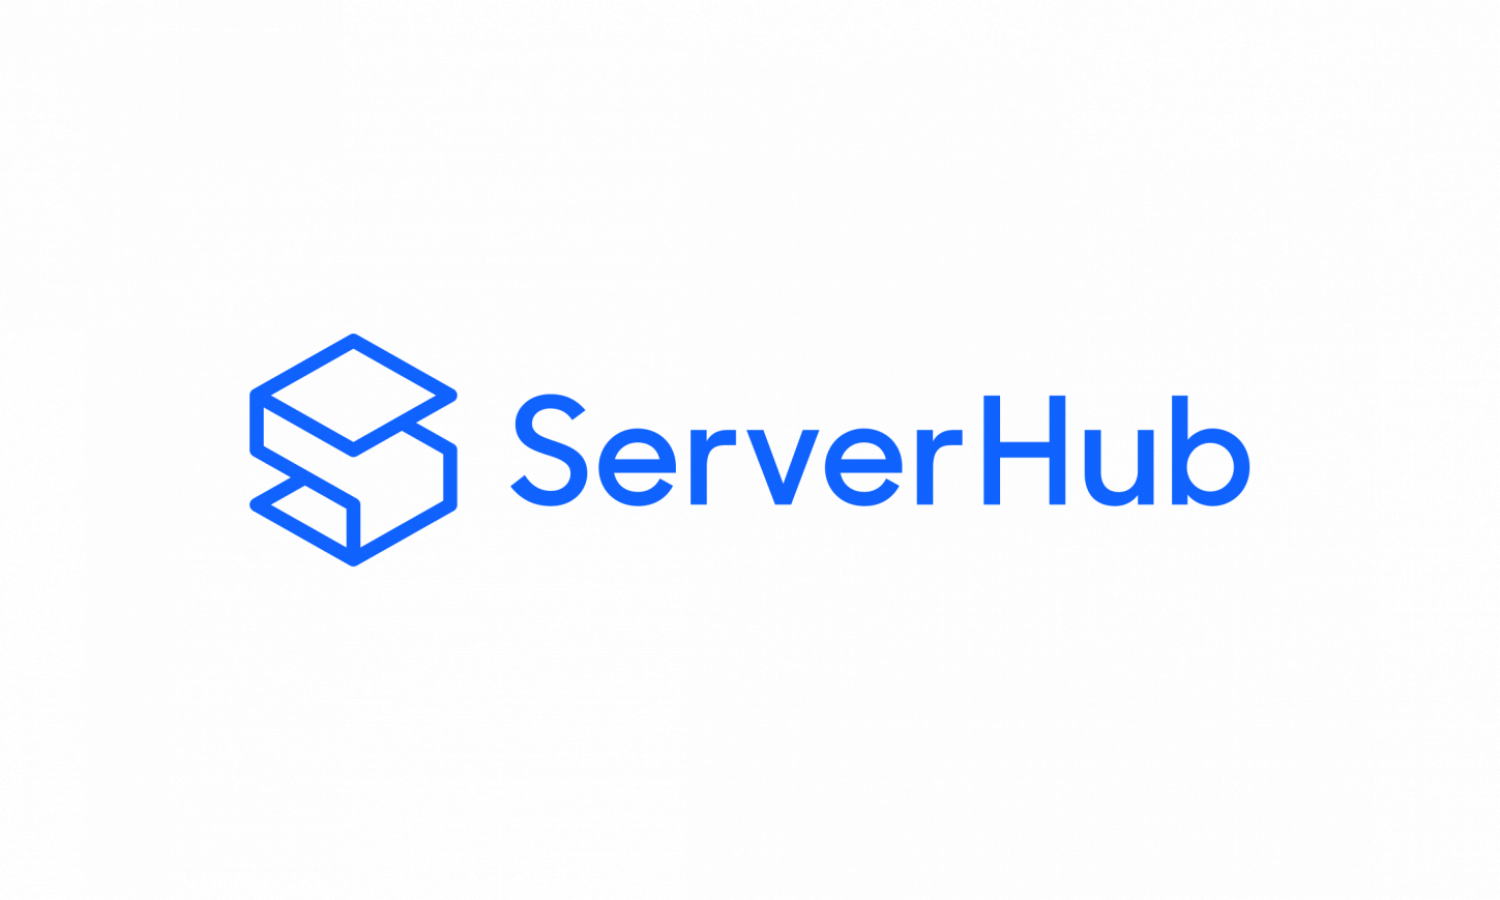 ServerHub - Light bg